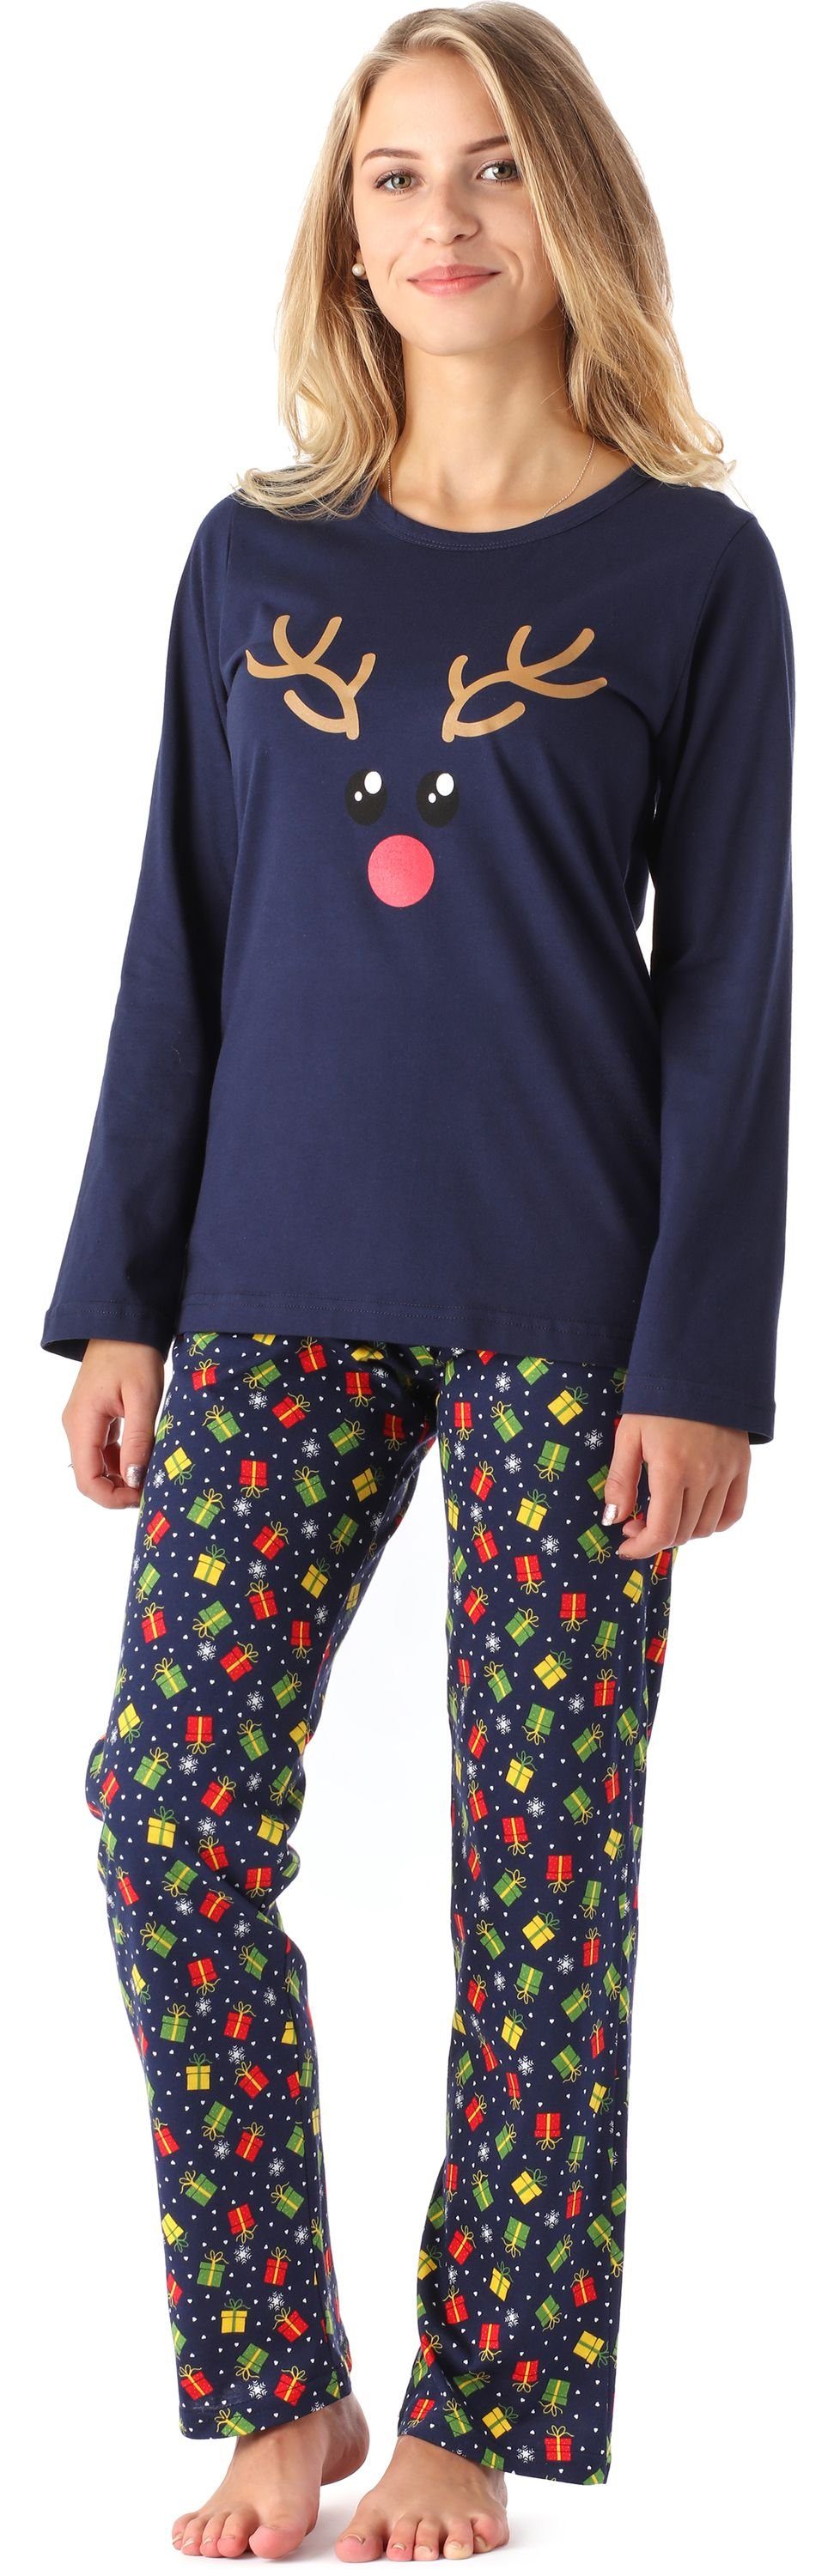 Style Pyjama MS10-192 Lang Schlafanzug Geschenke Schlafanzug Merry Winter Zweiteilieger Marine Damen